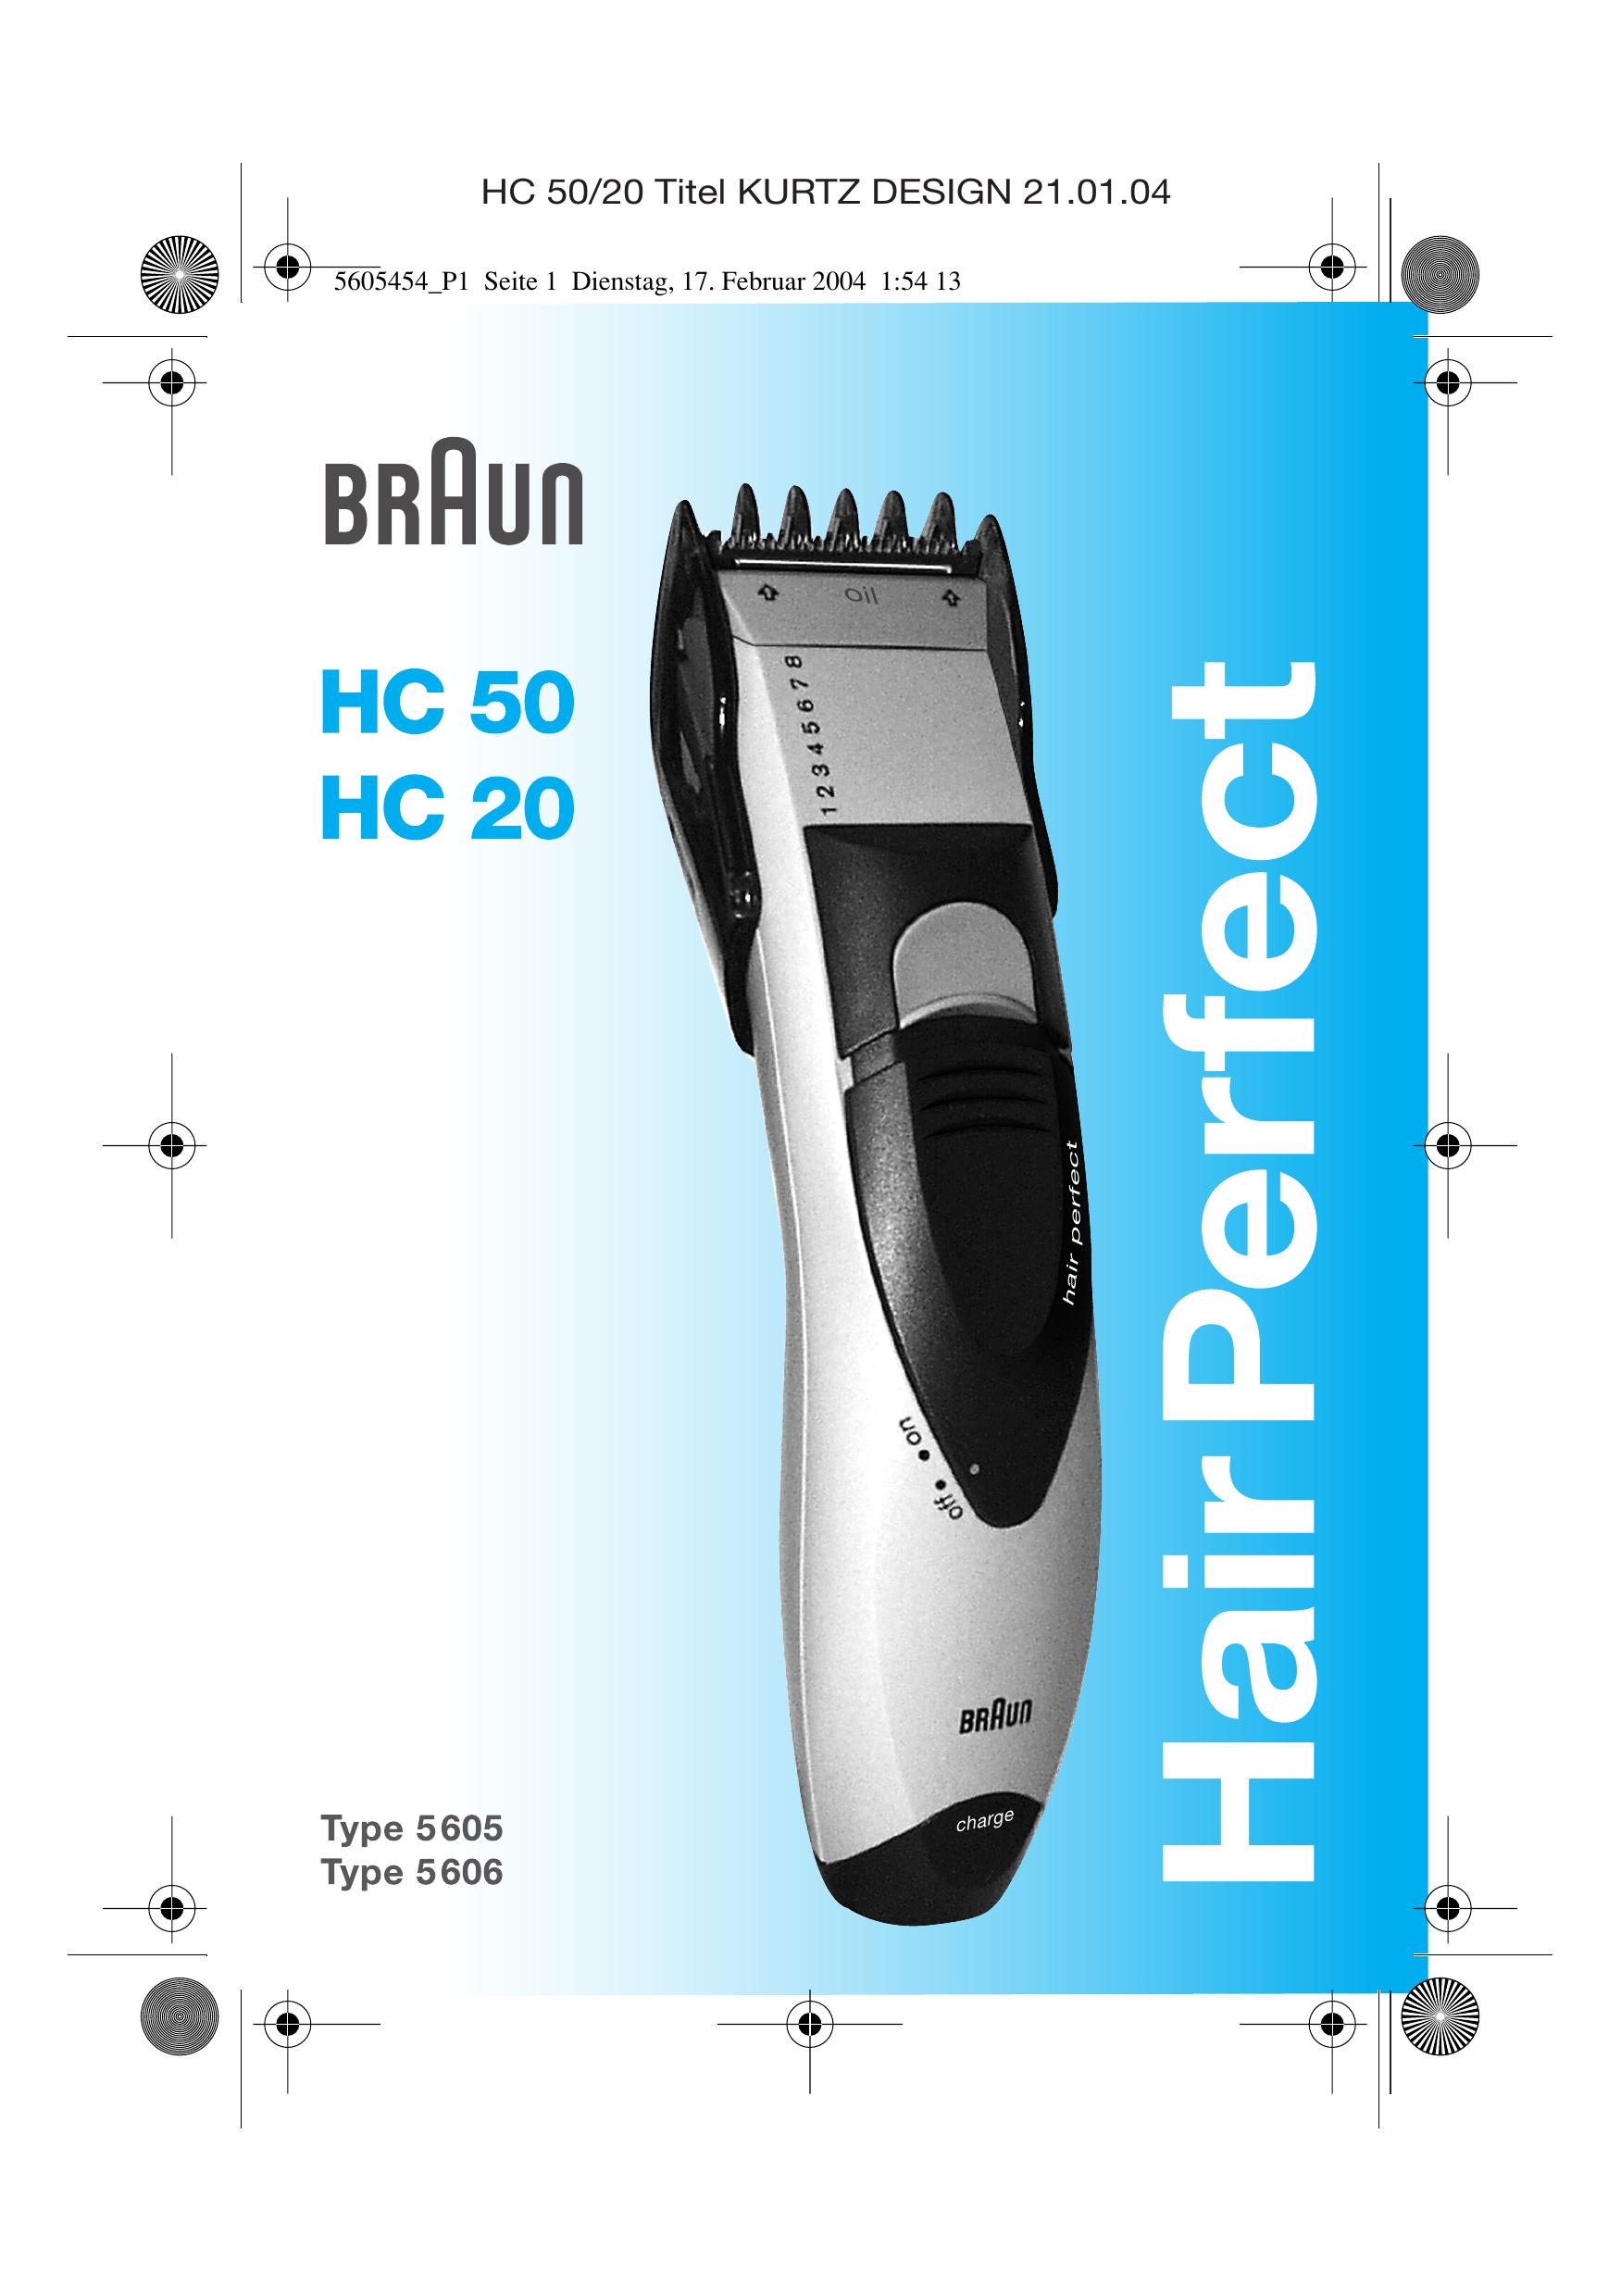 Braun HC 20 Hair Clippers User Manual